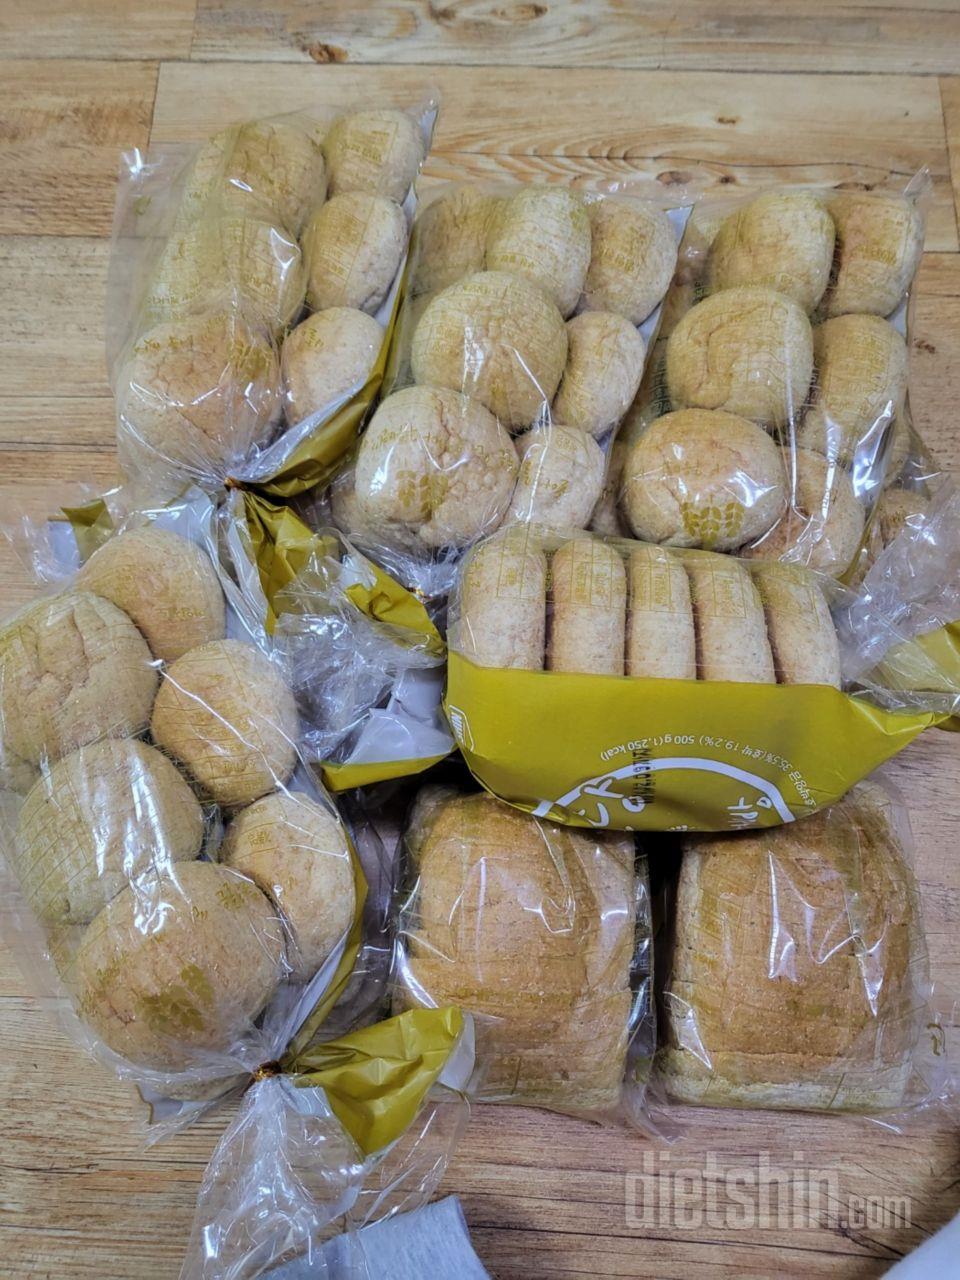 천연발효빵 통밀당 
모닝빵과 식빵